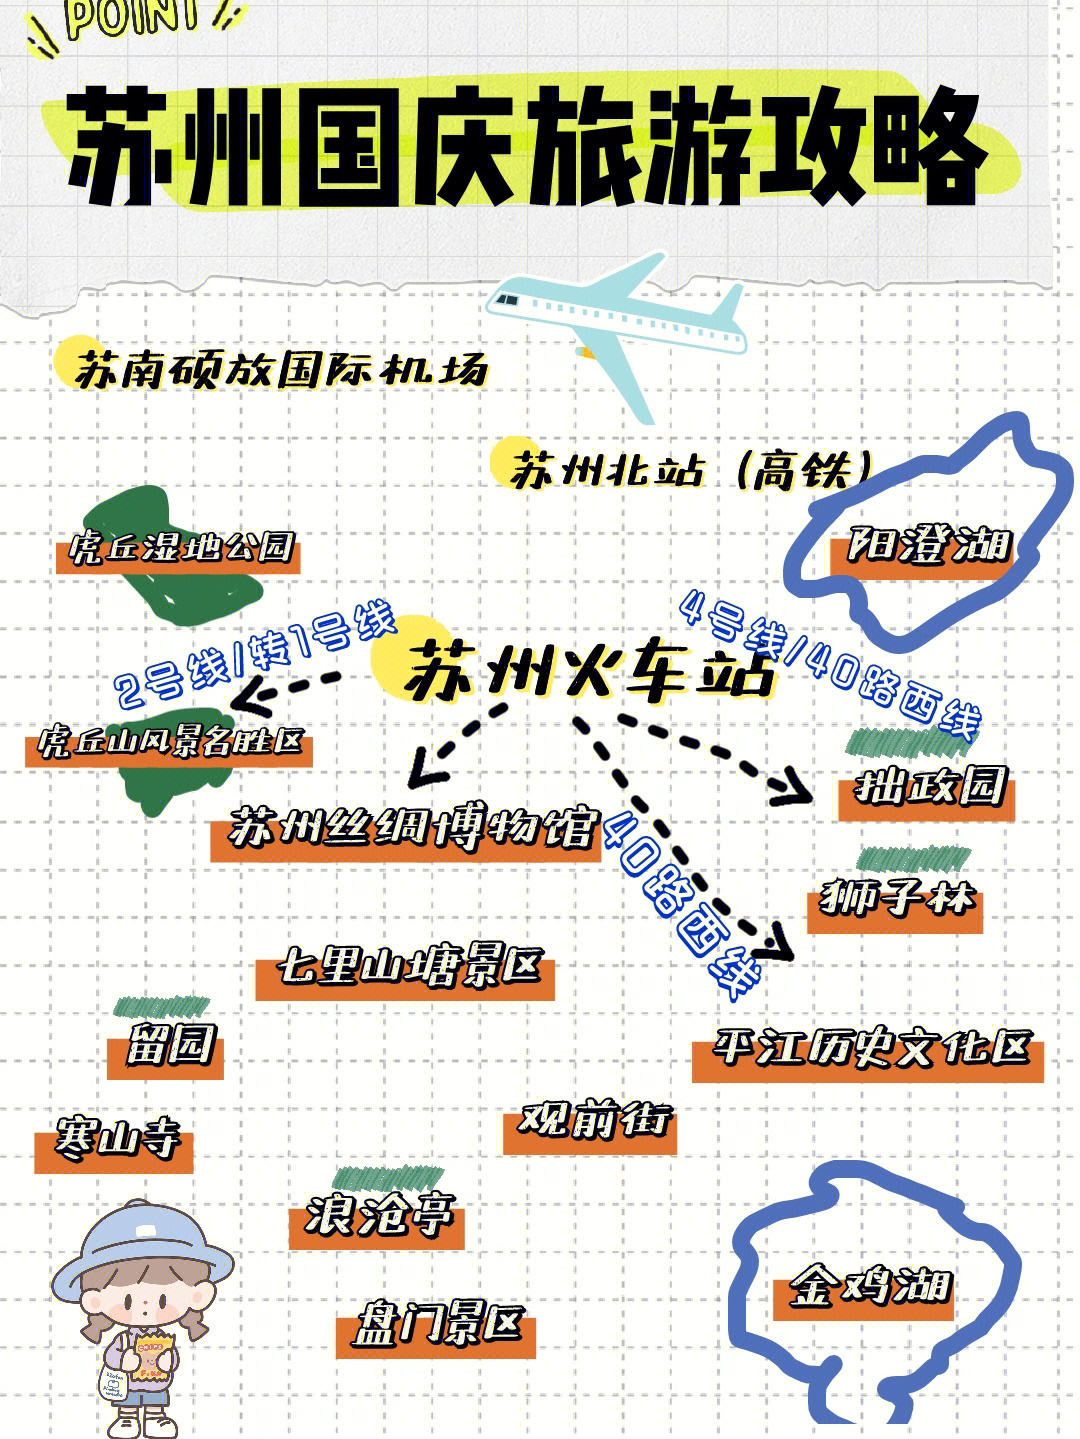 苏州国庆旅游攻略景点门票交通住宿地铁路线